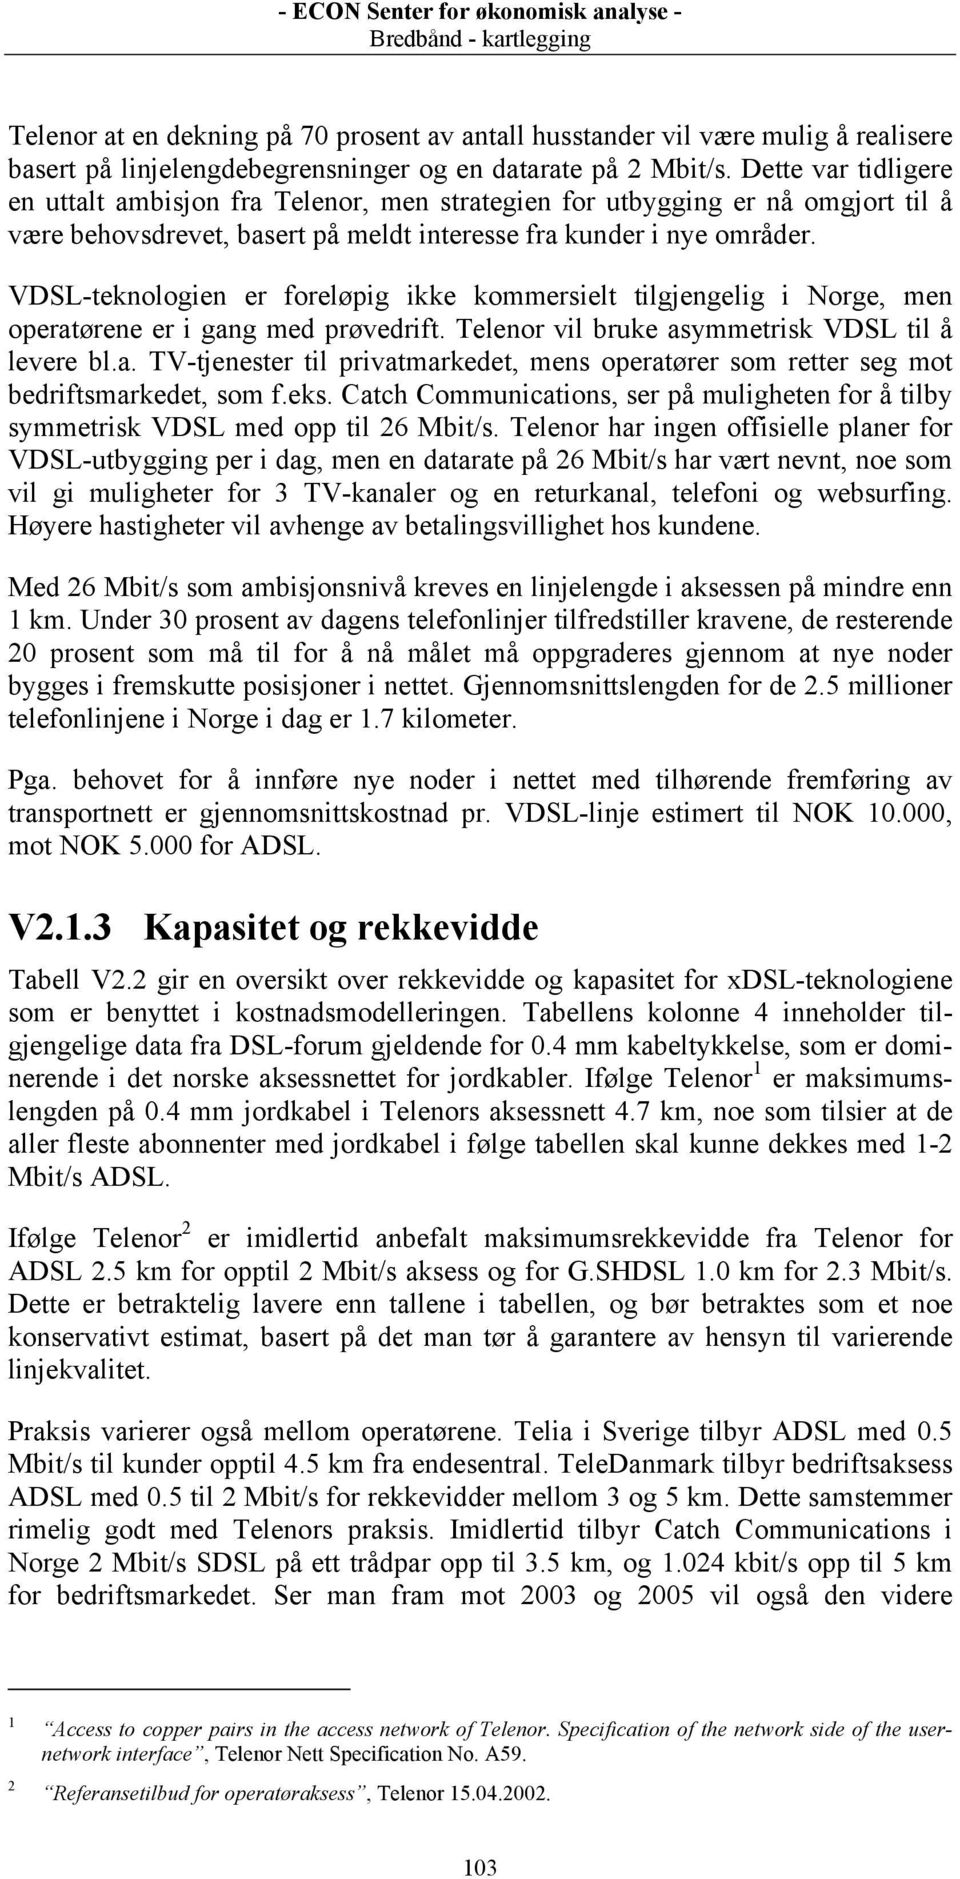 VDSL-teknologien er foreløpig ikke kommersielt tilgjengelig i Norge, men operatørene er i gang med prøvedrift. Telenor vil bruke asymmetrisk VDSL til å levere bl.a. TV-tjenester til privatmarkedet, mens operatører som retter seg mot bedriftsmarkedet, som f.